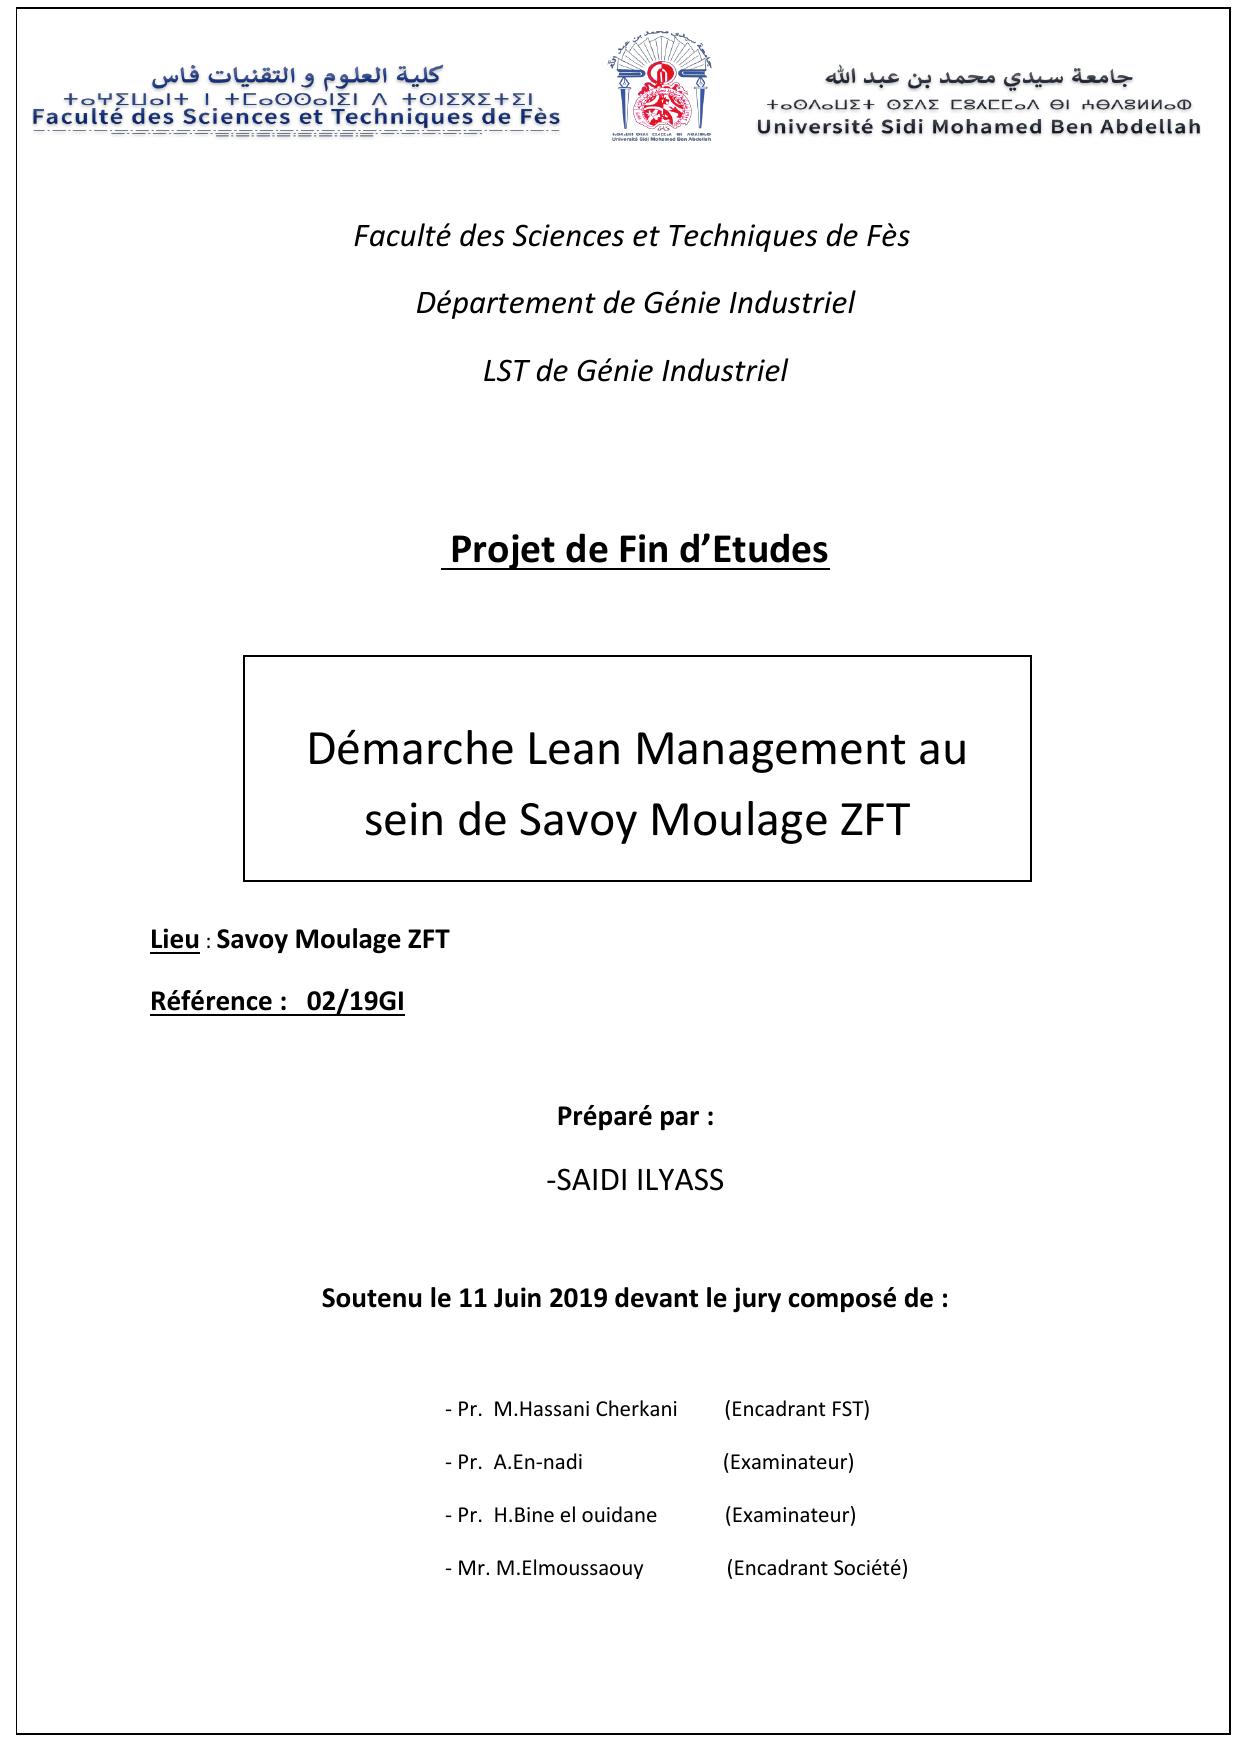 Démarche Lean Management au sein de Savoy Moulage ZFT